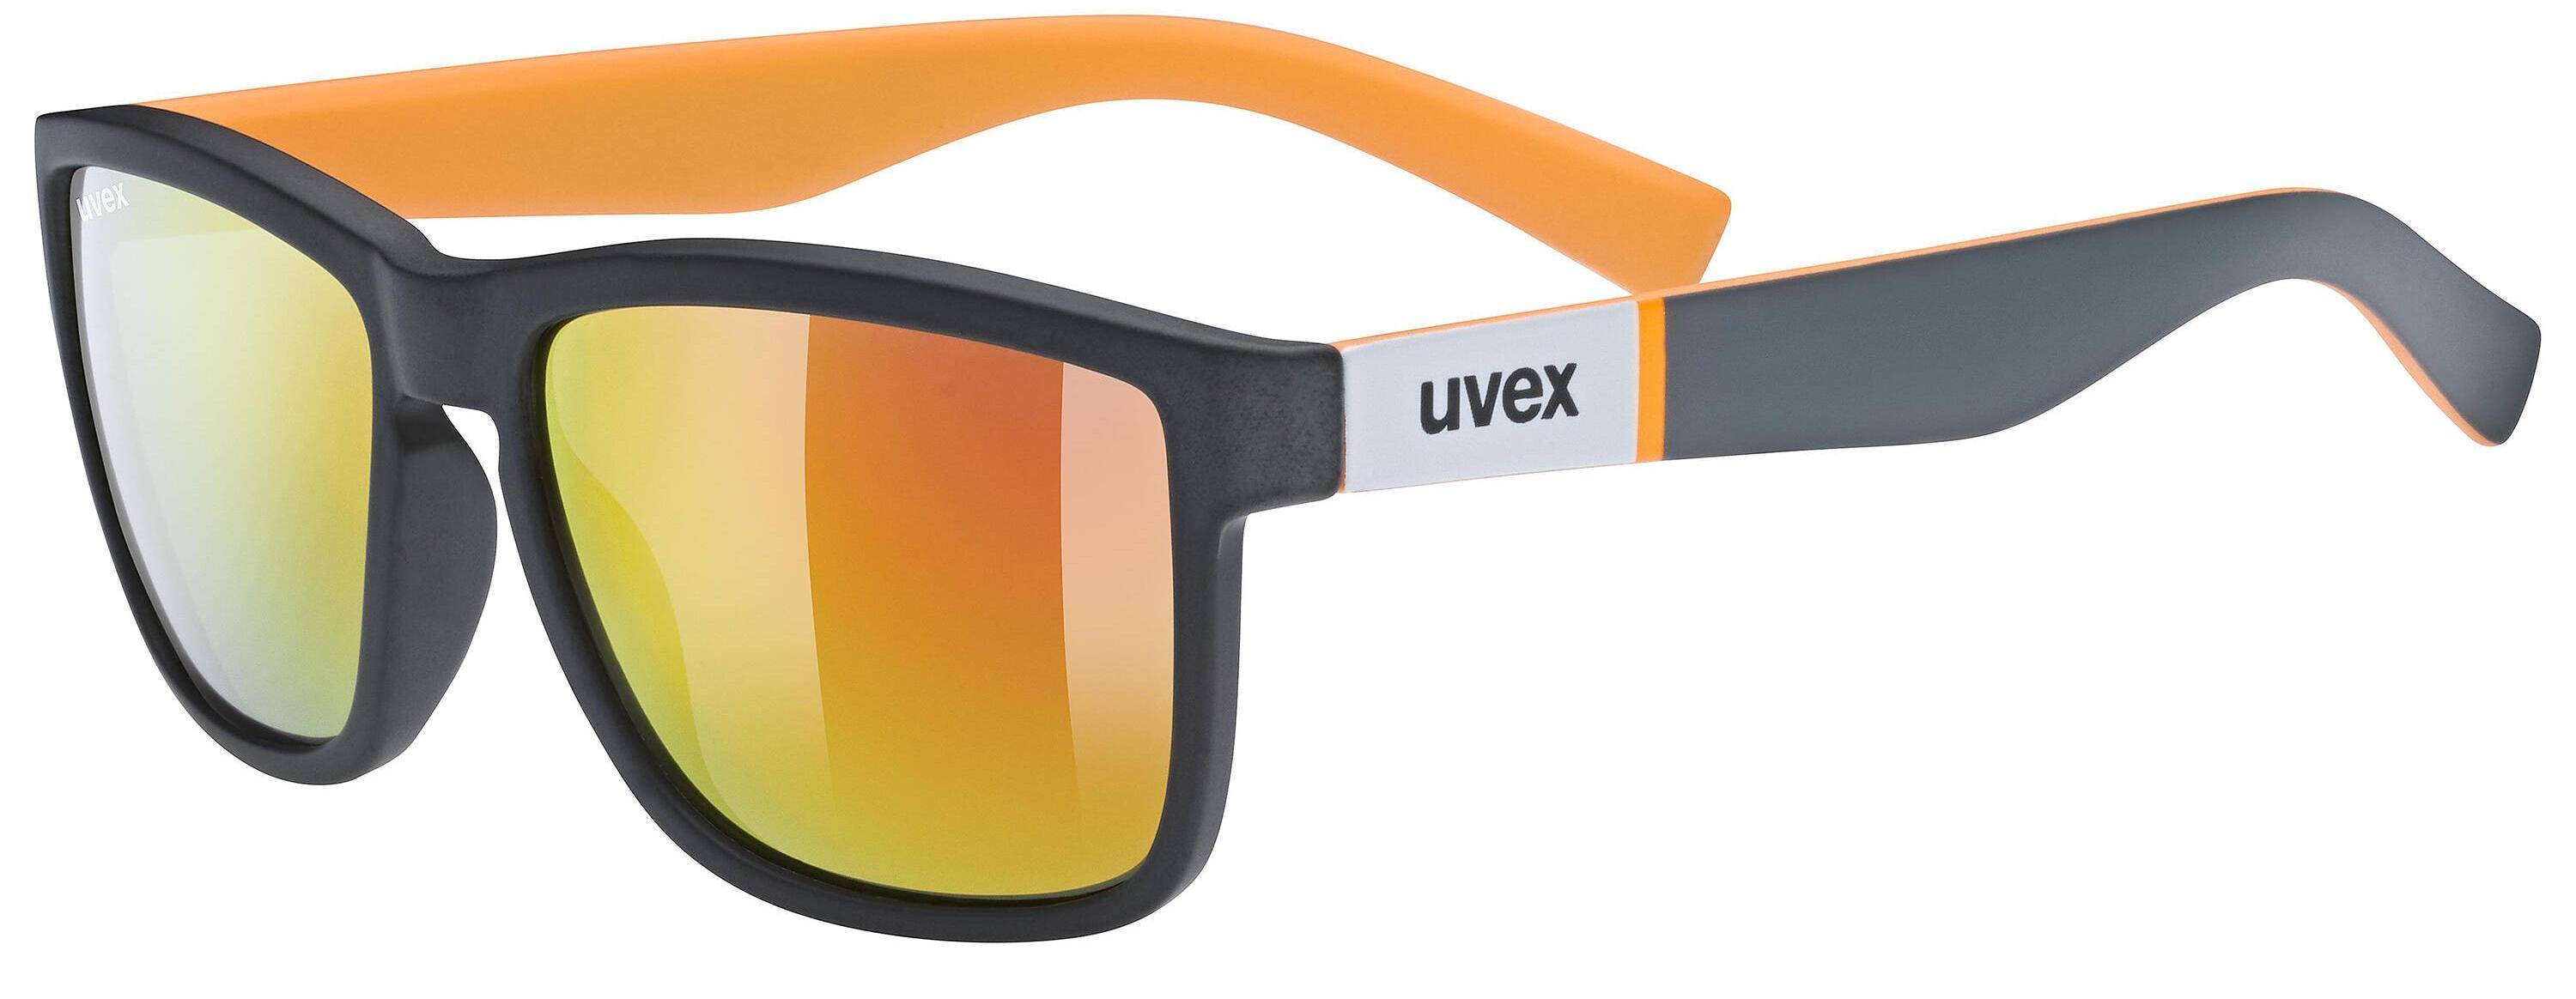 Okulary Uvex Lgl 39 czarno-pomarańczowe (Zdjęcie 3)